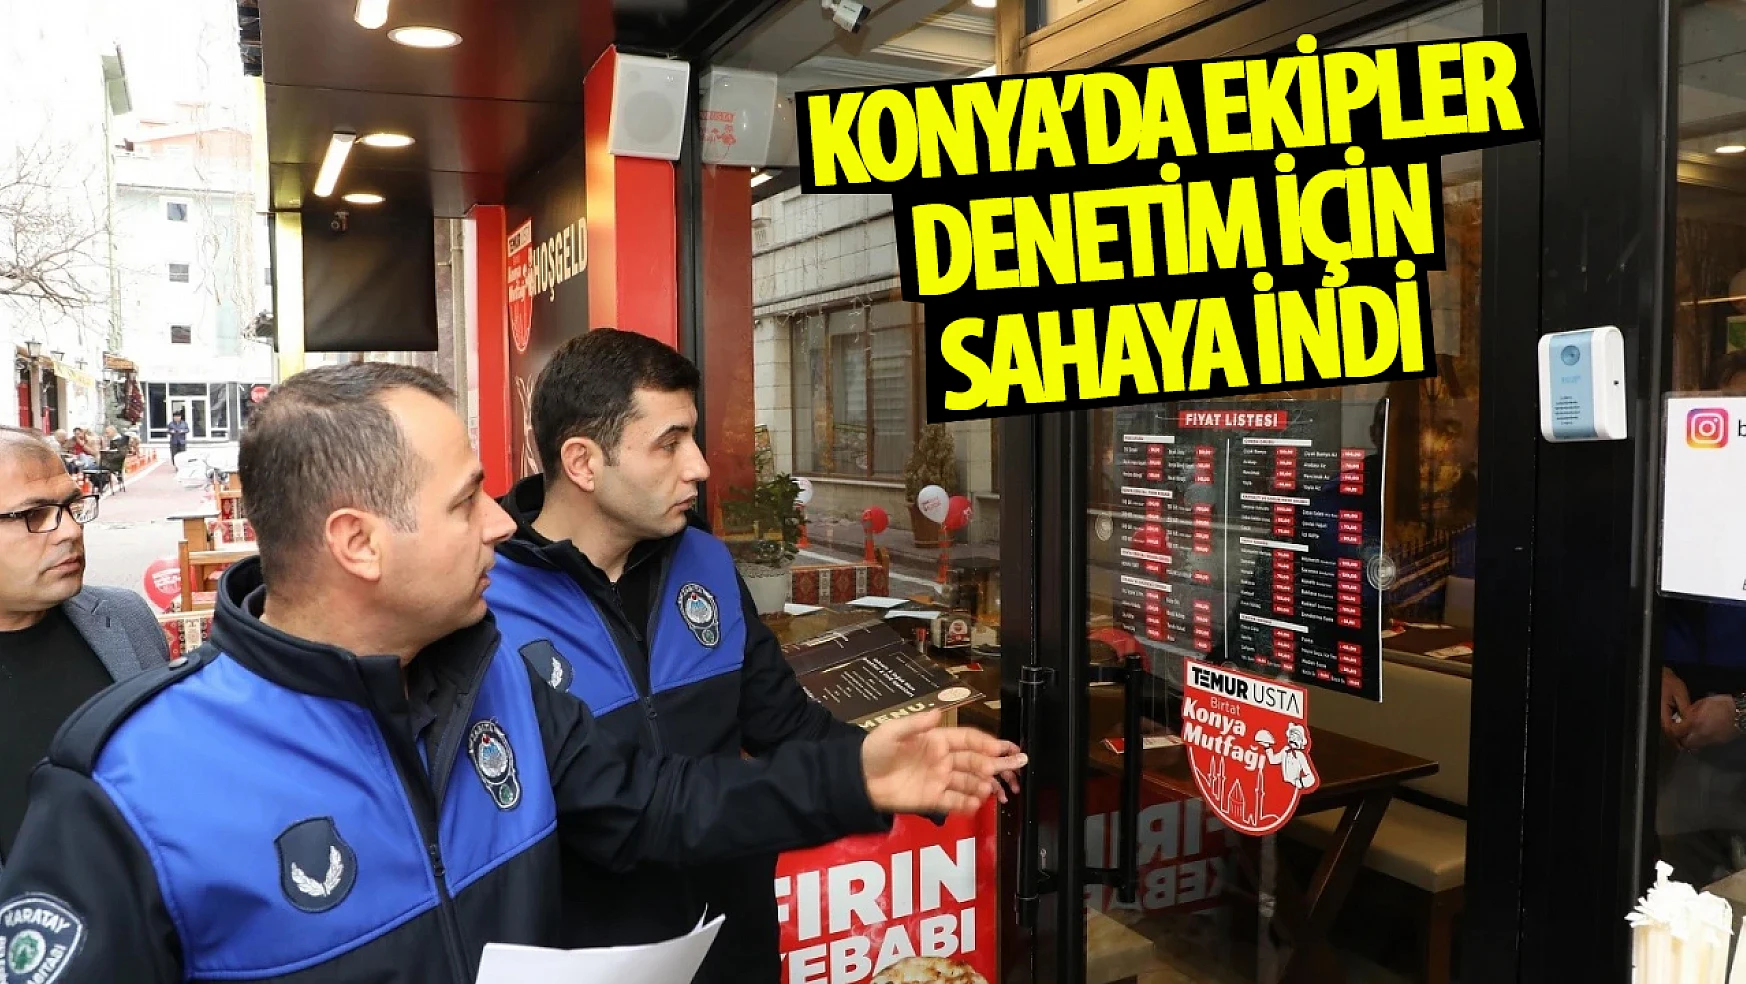 Konya'da ekipler sahaya indi: Denetimler artırıldı!